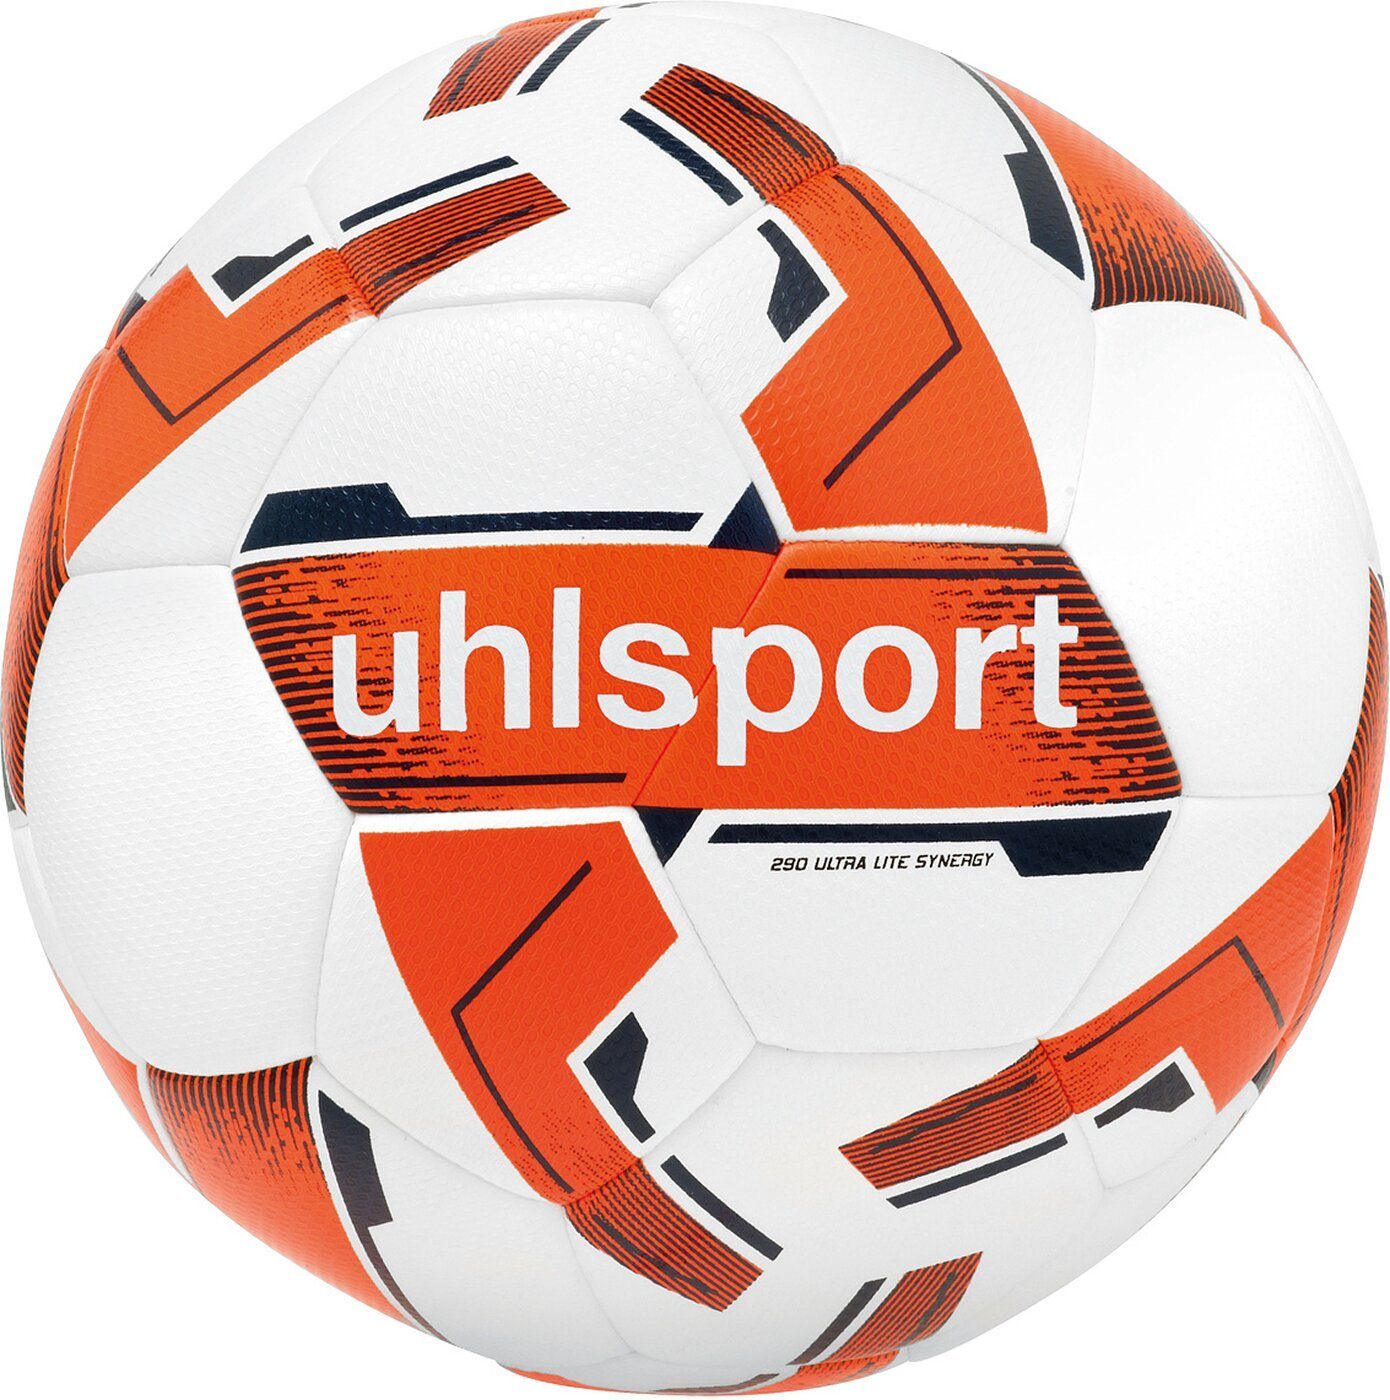 uhlsport Fußball 290 ULTRA LITE SYNERGY 02 weiß/fluo orange/marine